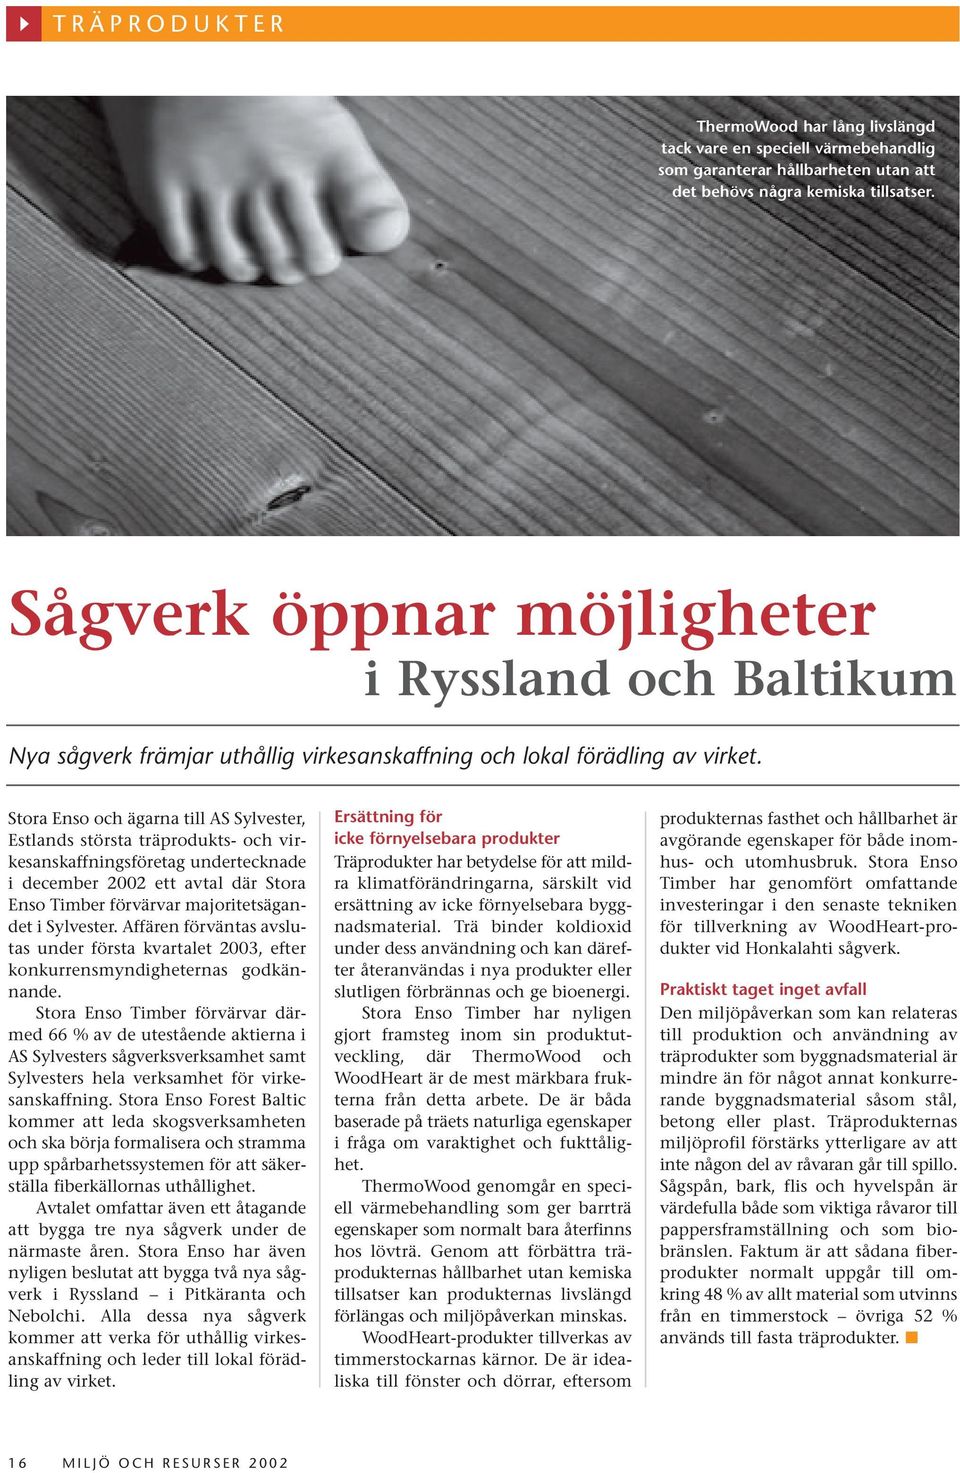 Stora Enso och ägarna till AS Sylvester, Estlands största träprodukts- och virkesanskaffningsföretag undertecknade i december 2002 ett avtal där Stora Enso Timber förvärvar majoritetsägandet i